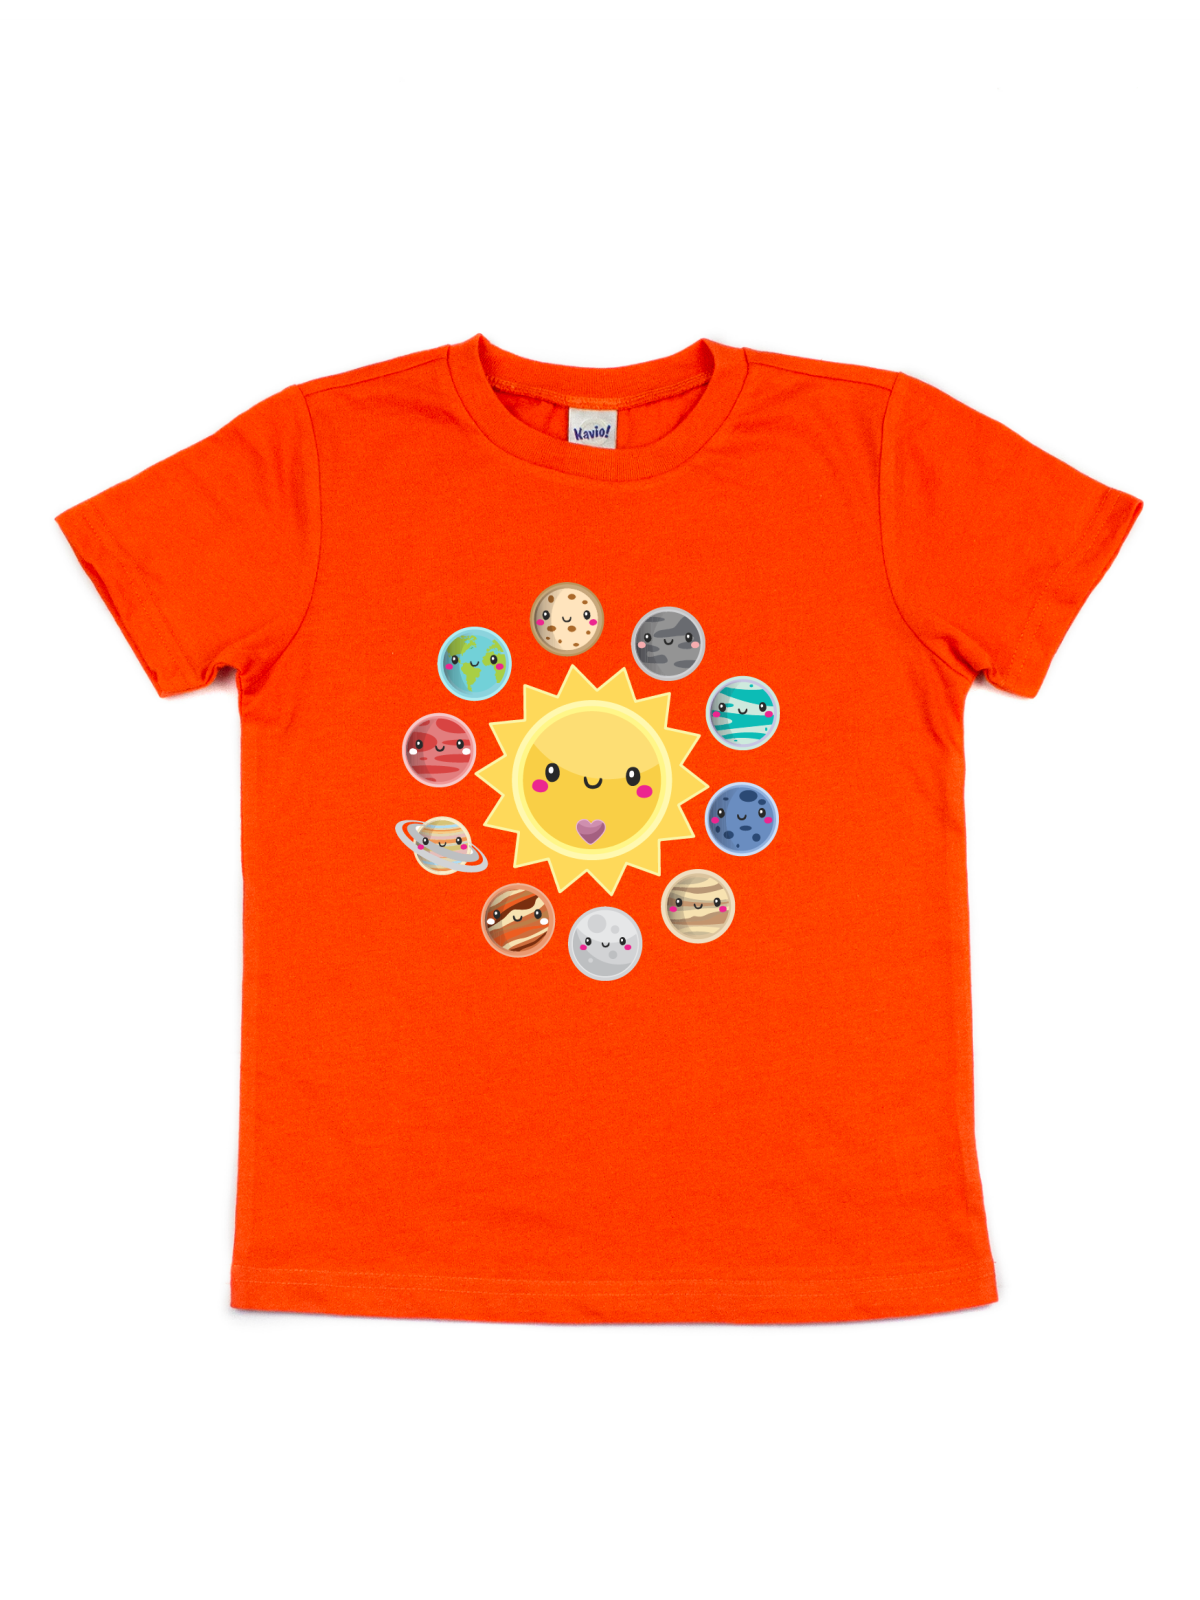 Solar System Kids Shirt - Orange